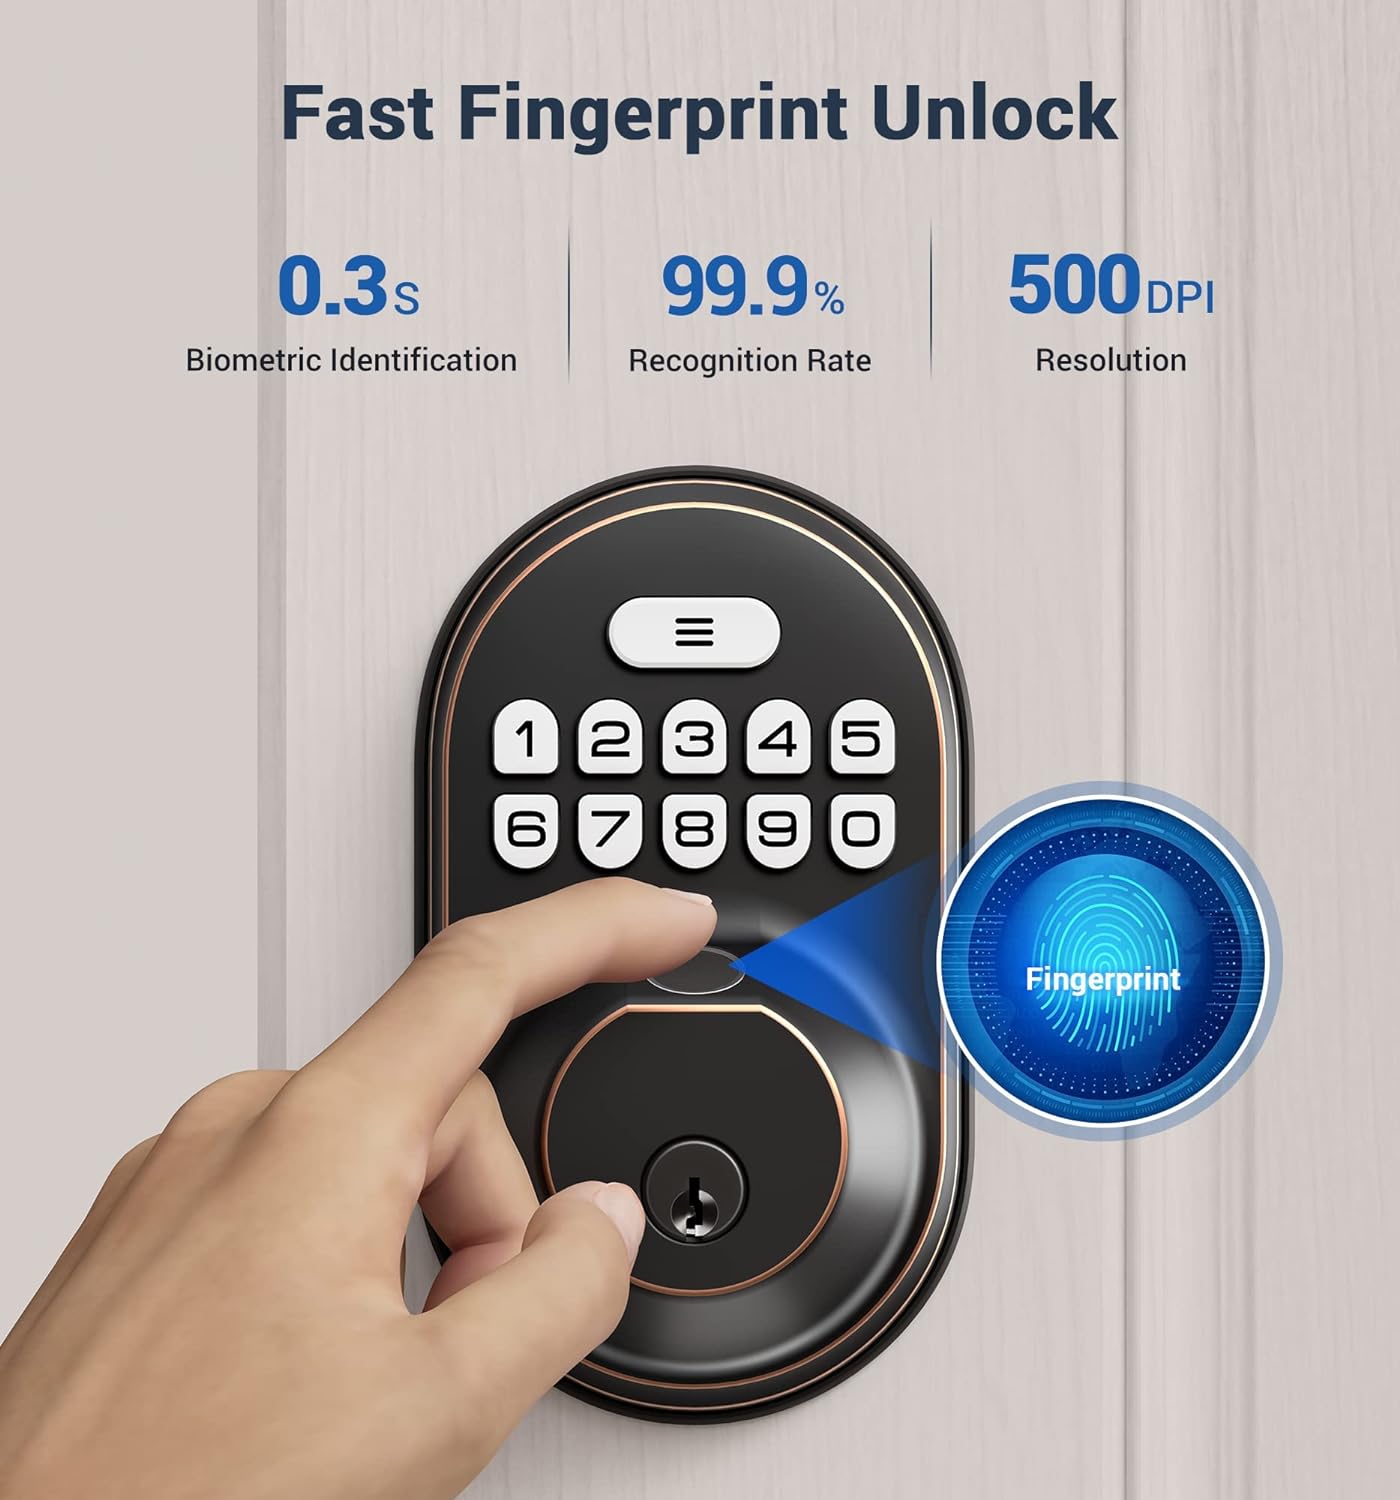 Veise RZ02A Fingerprint Door Lock, Keyless Entry Lock Keypad Deadbolt with 20 Fingerprint, Anti Peeping Password, Auto Keyed Entry, Smart Locks for Front Door, Easy Install